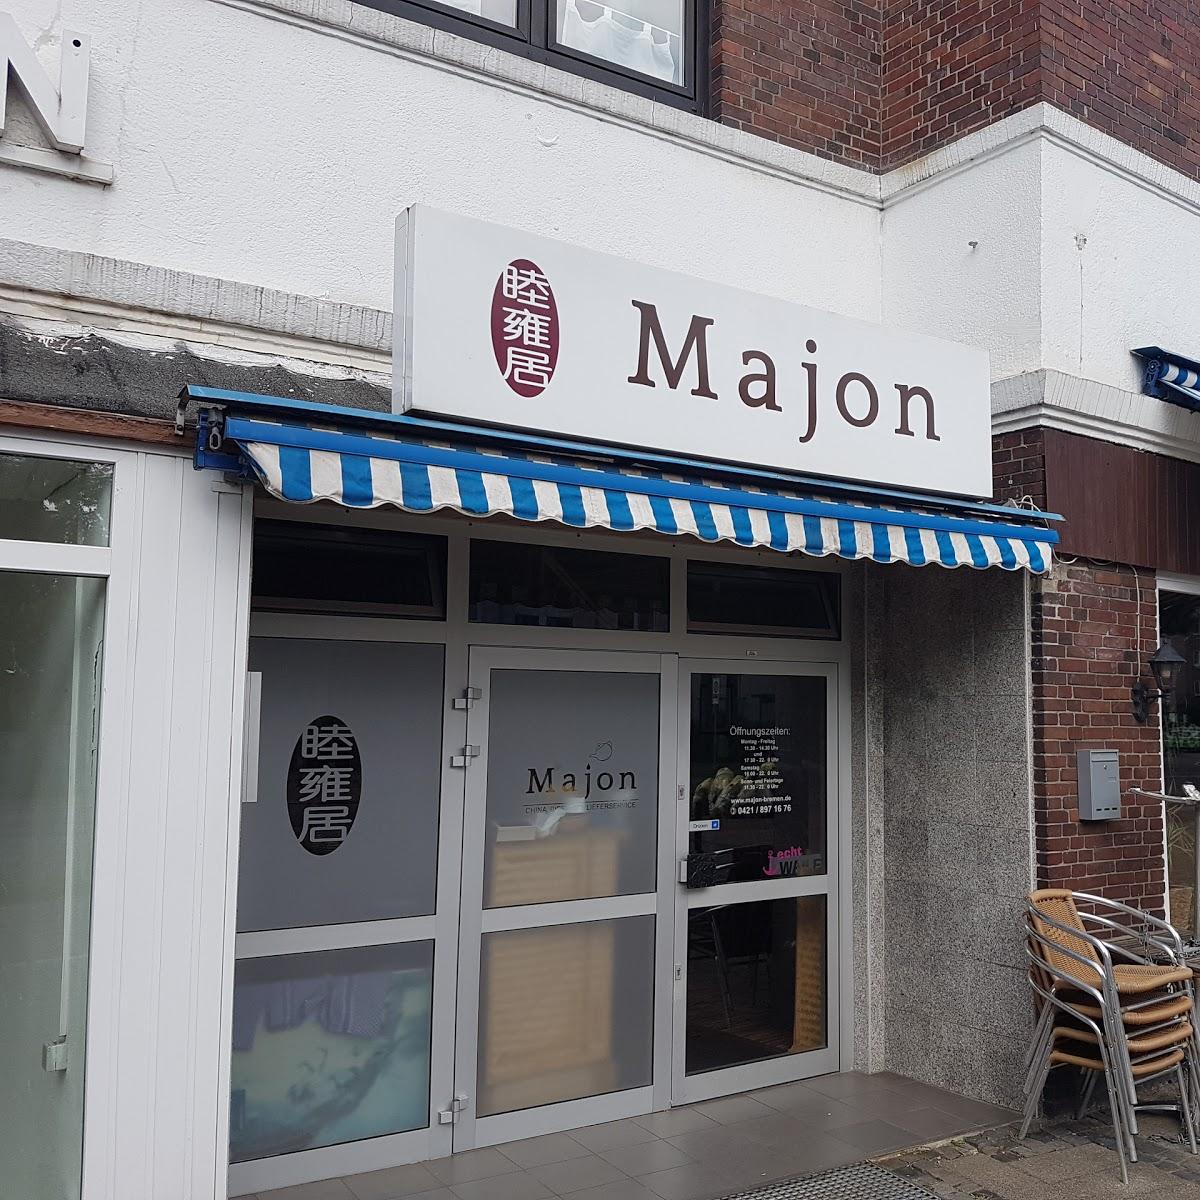 Restaurant "Majon" in Bremen